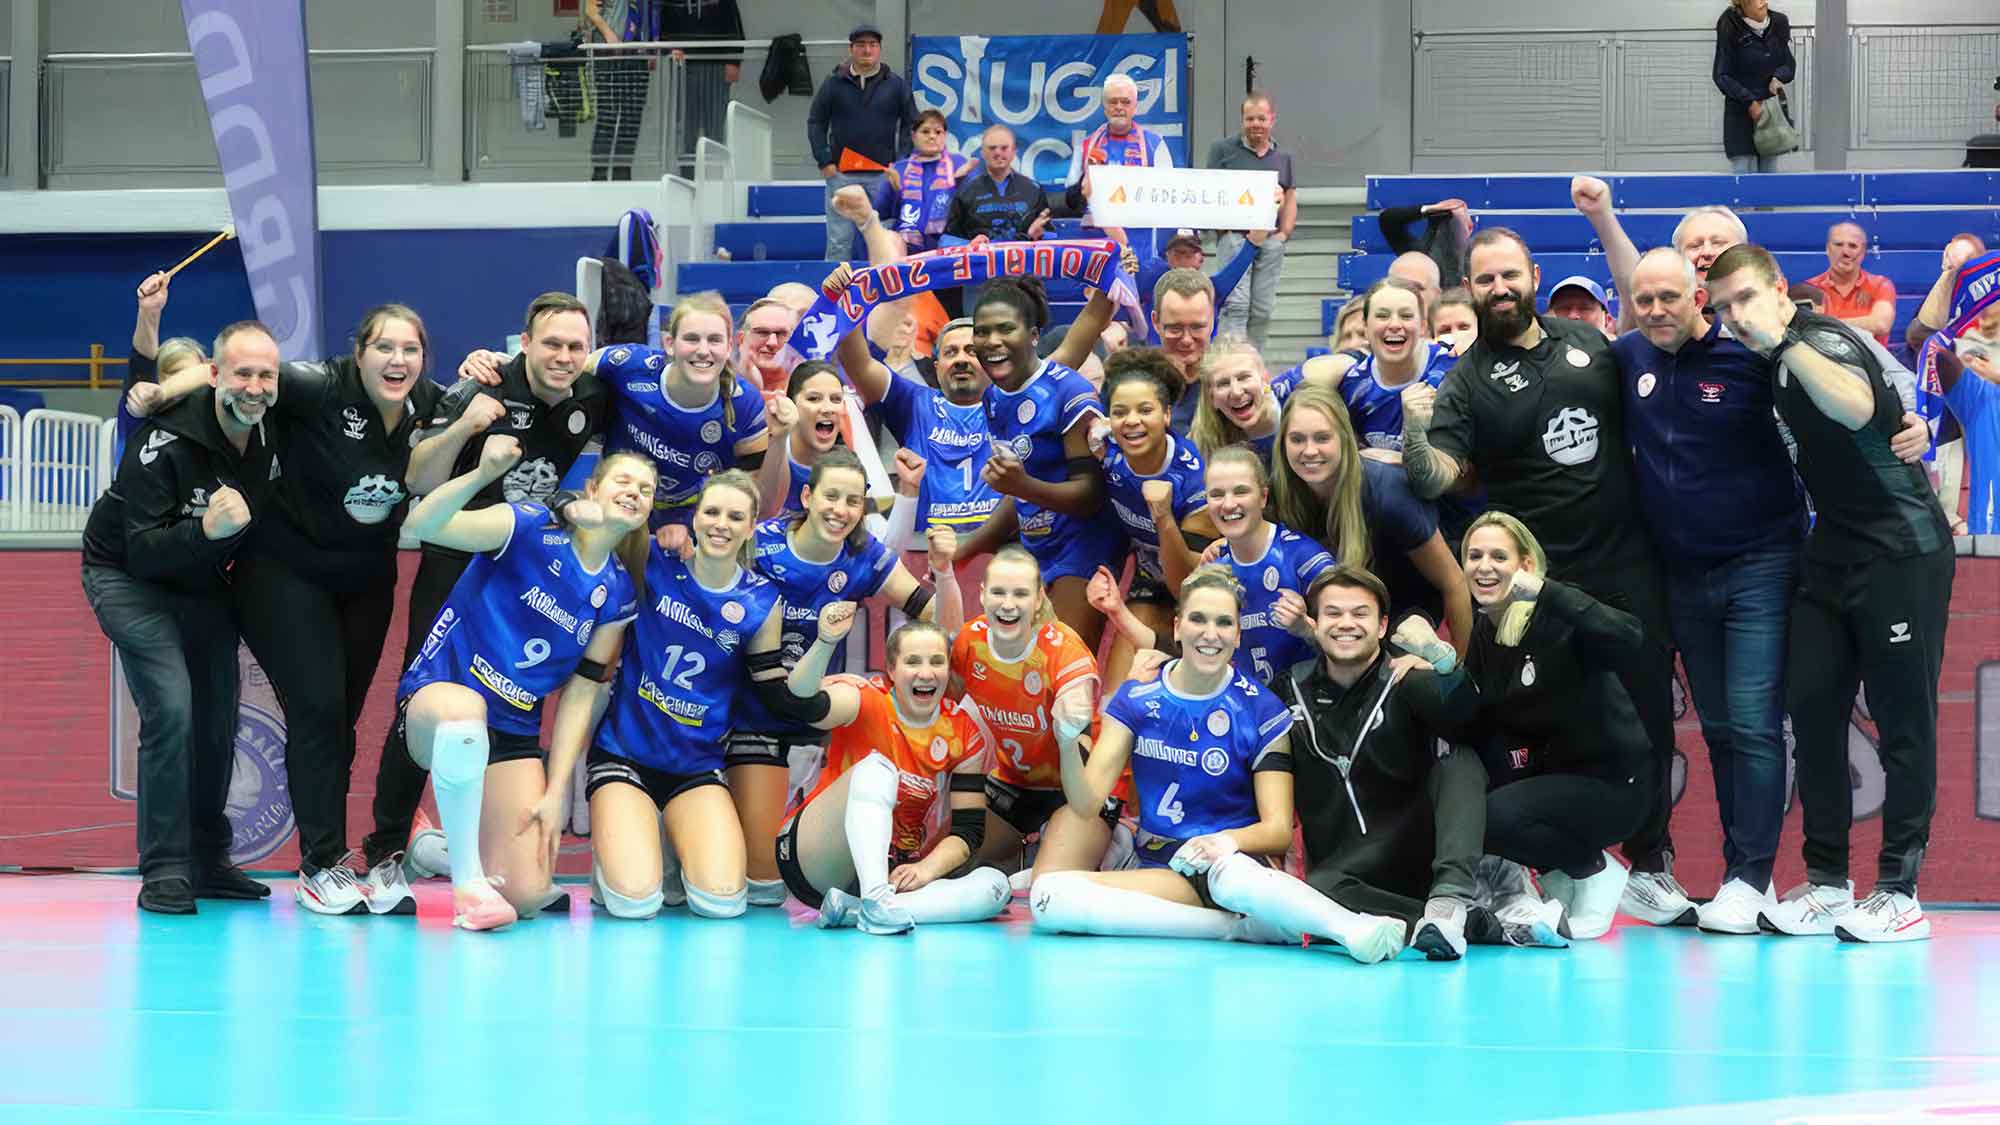 Deutscher Volleyball Verband (DVV) Pokal: Stuttgart und Potsdam ziehen ins Finale ein